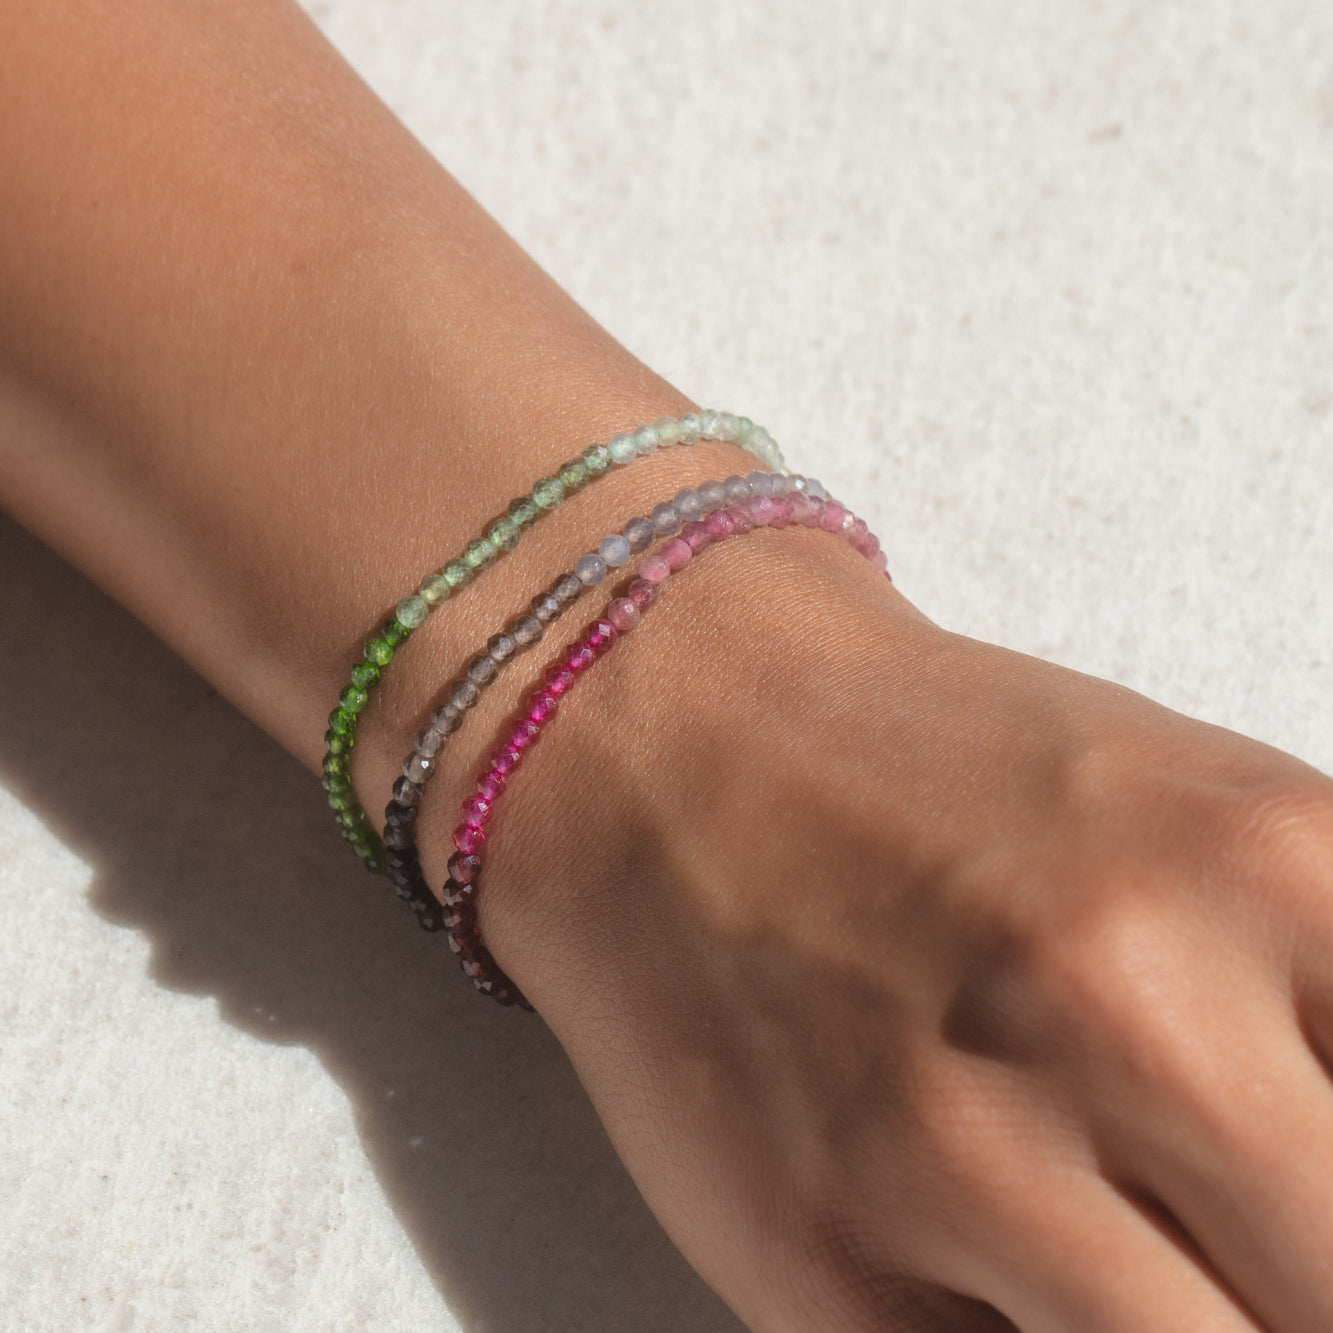 Pandora style bracelet extenders, extend any Comoros